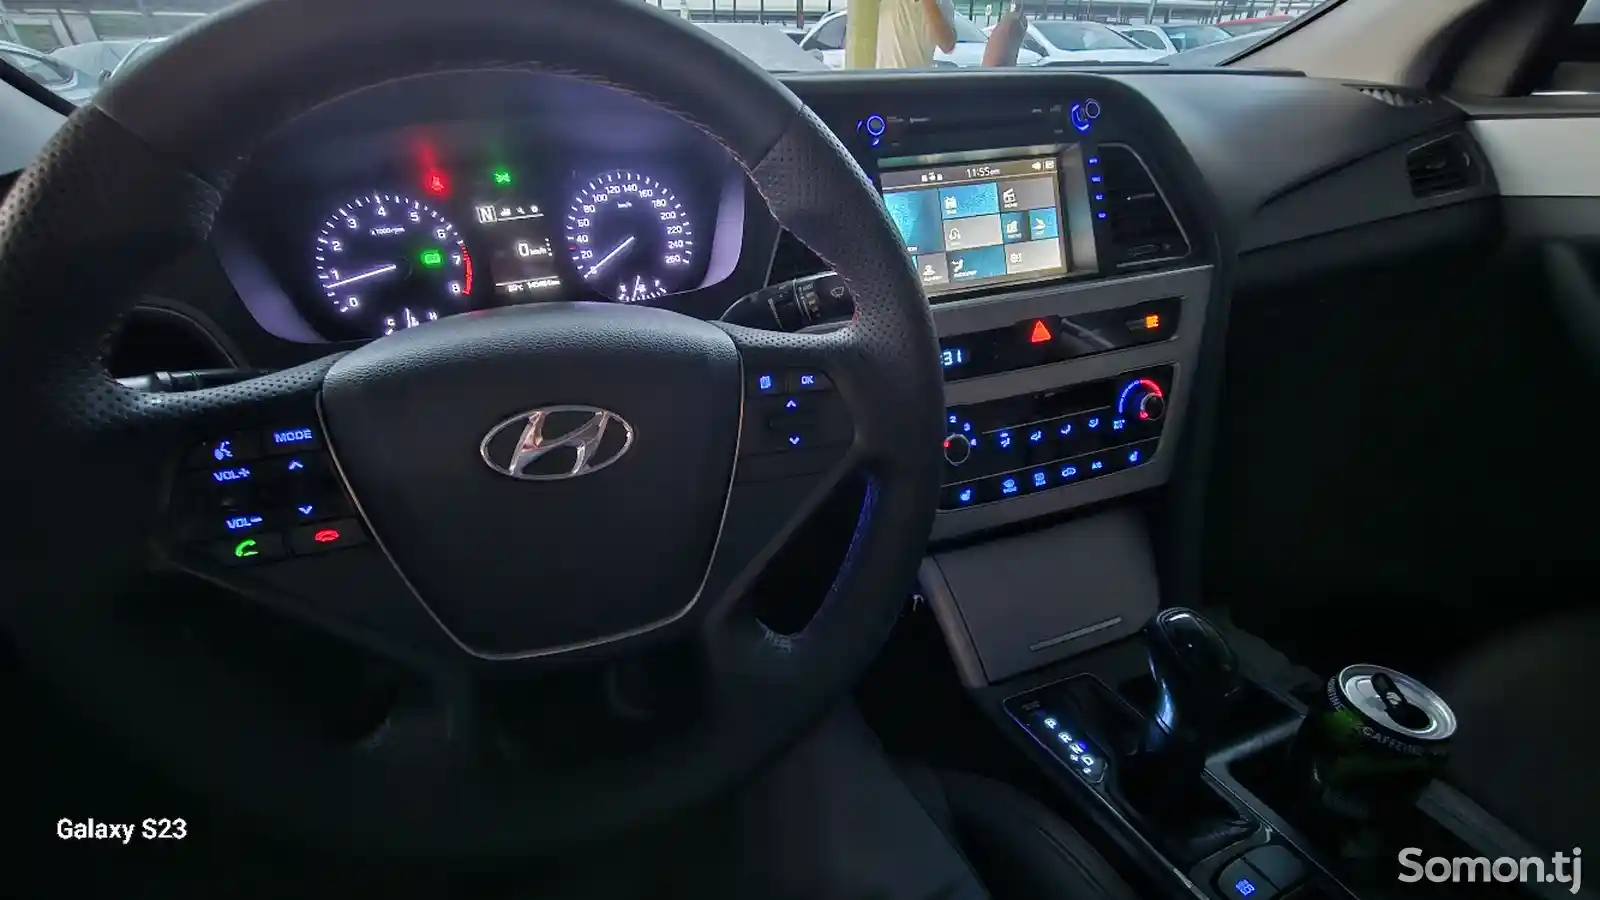 Hyundai Sonata, 2015-9